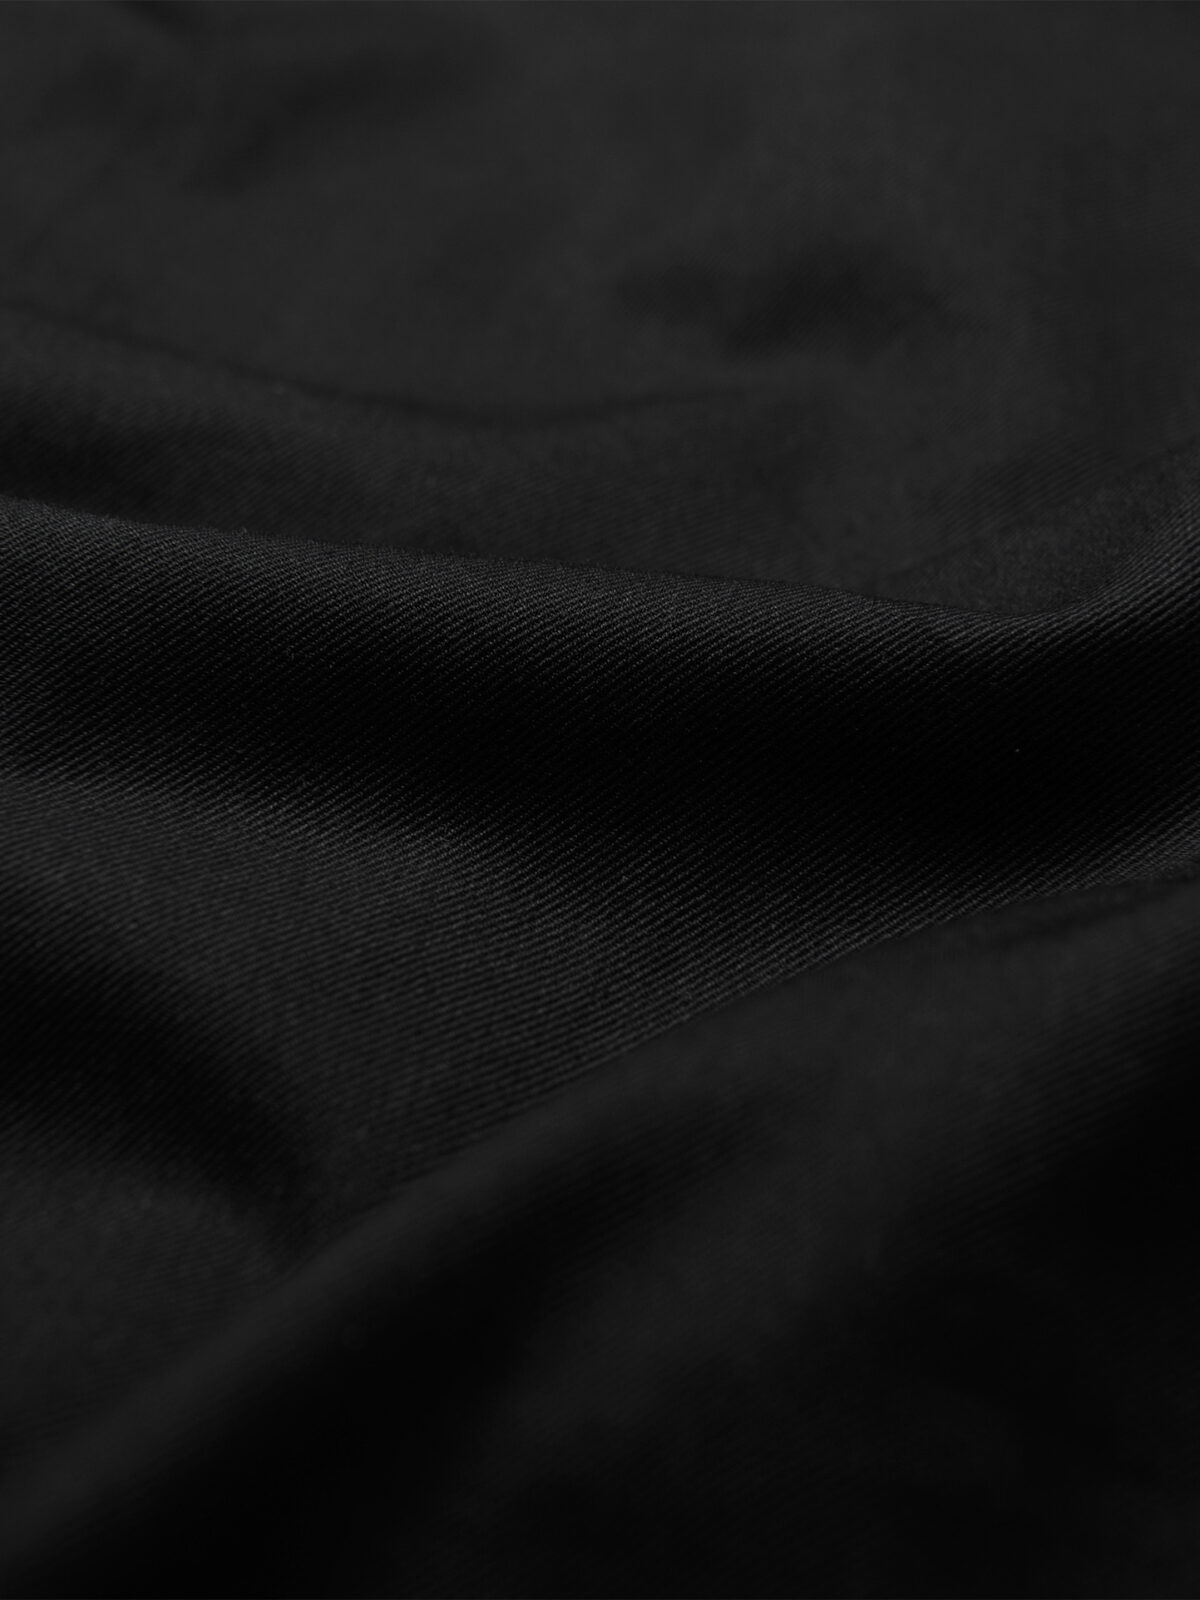 Greenwich Black Twill Shirts by Proper Cloth